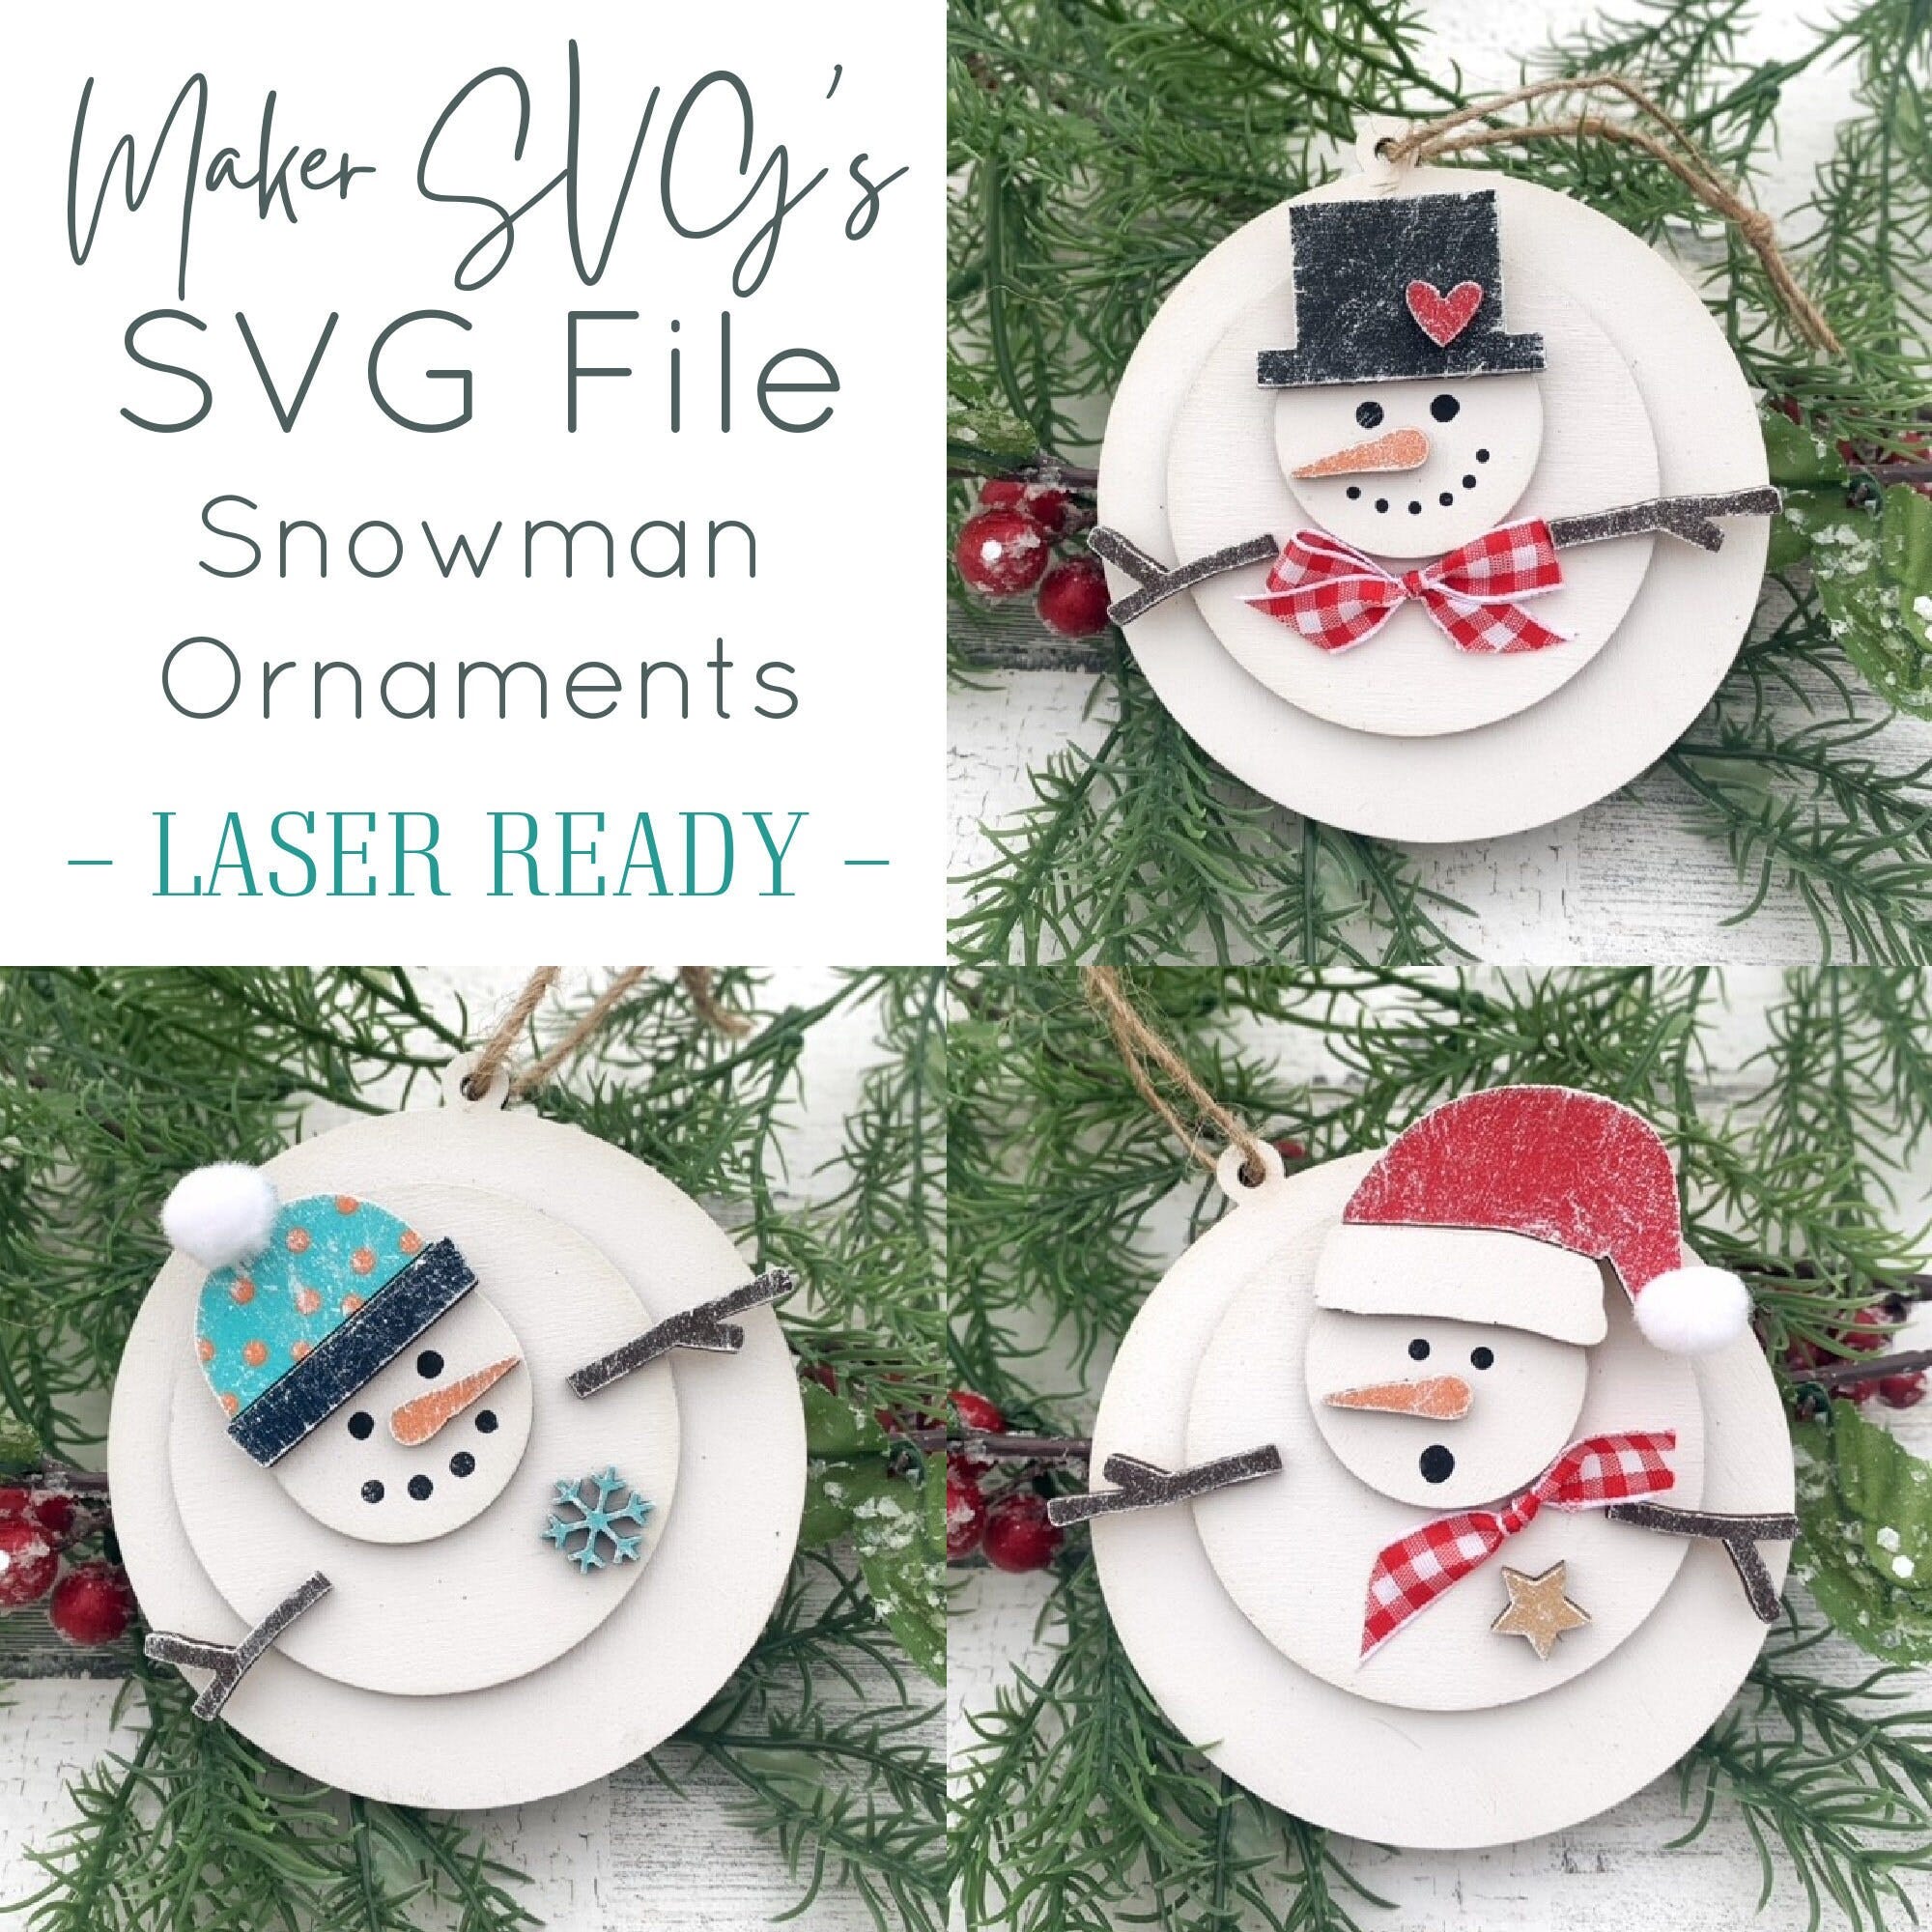 Snowman Ornament SVG | Ornament SVG |  Snowman Ornament SVG |  Laser Cut File | Ornament Kit File |  Snowman Ornaments  | Quick Ornaments